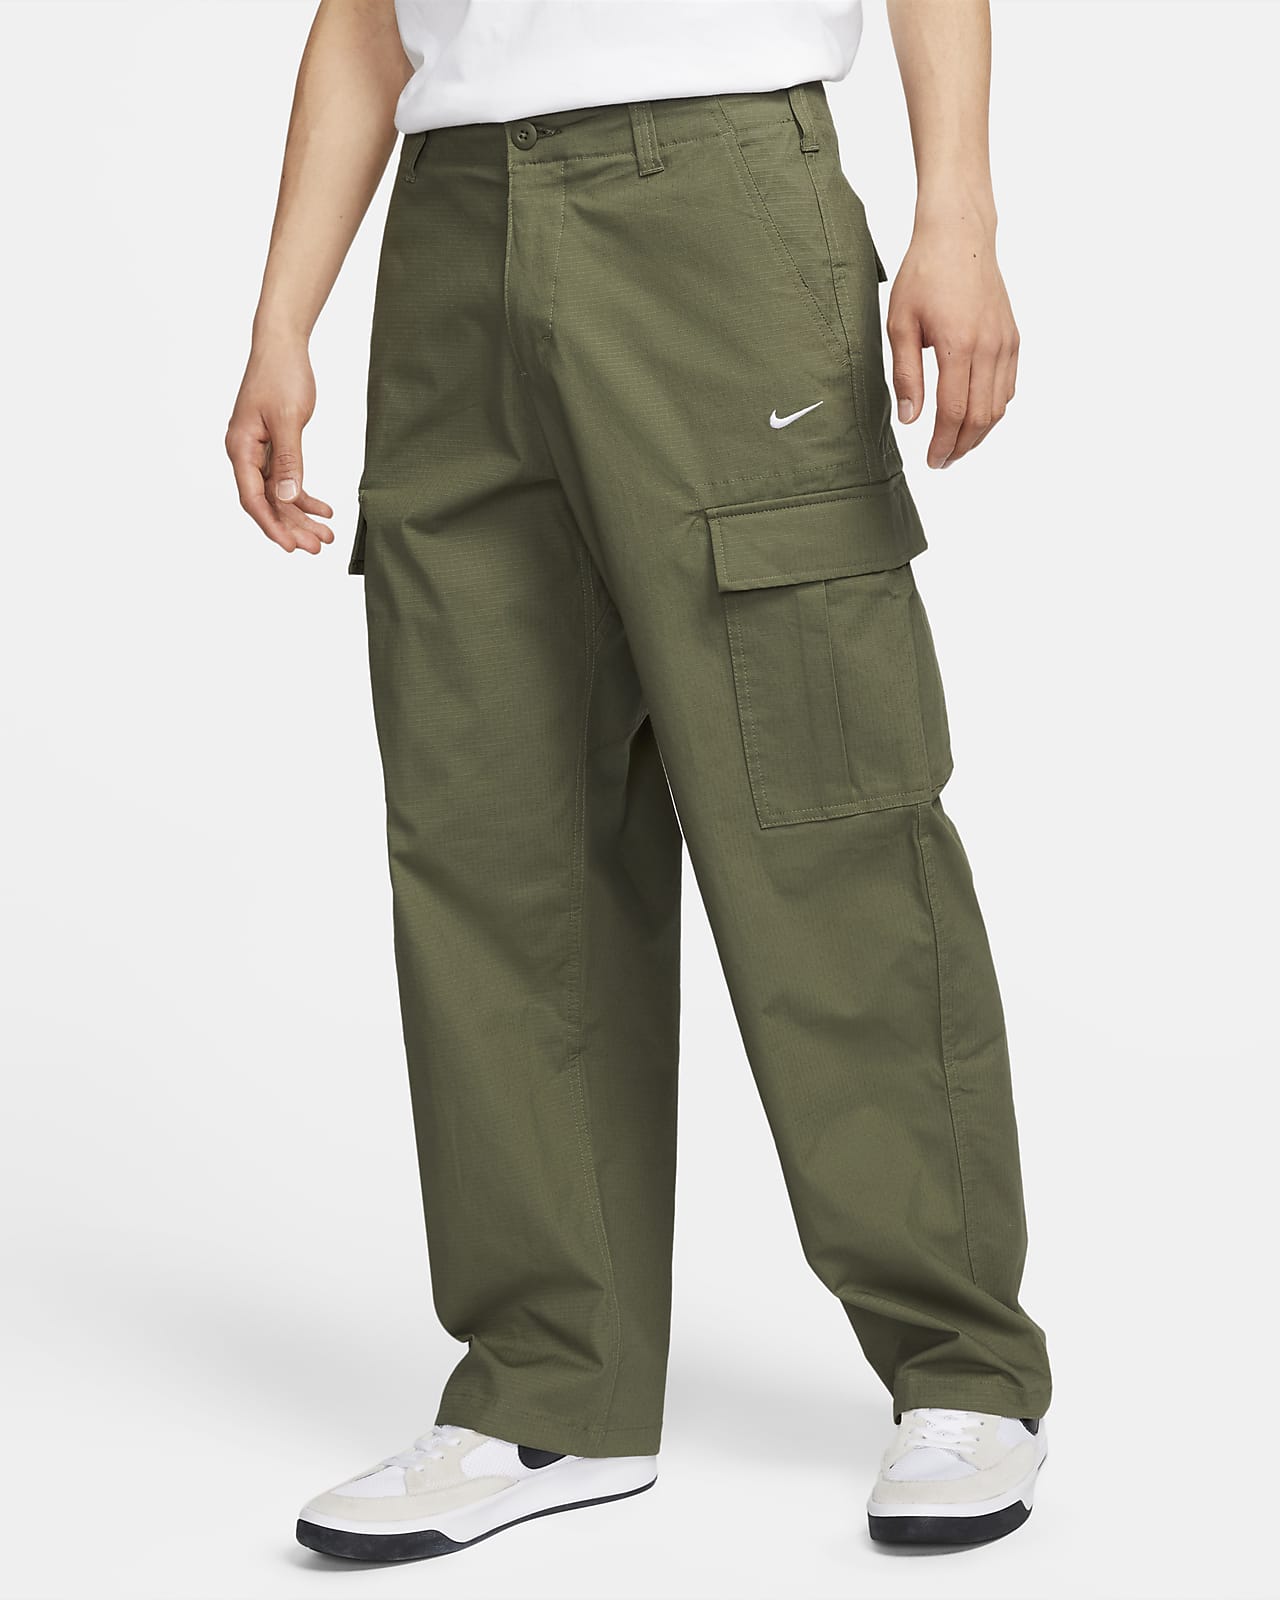 discount 70% H&M slacks Brown 34                  EU WOMEN FASHION Trousers Slacks Shorts 